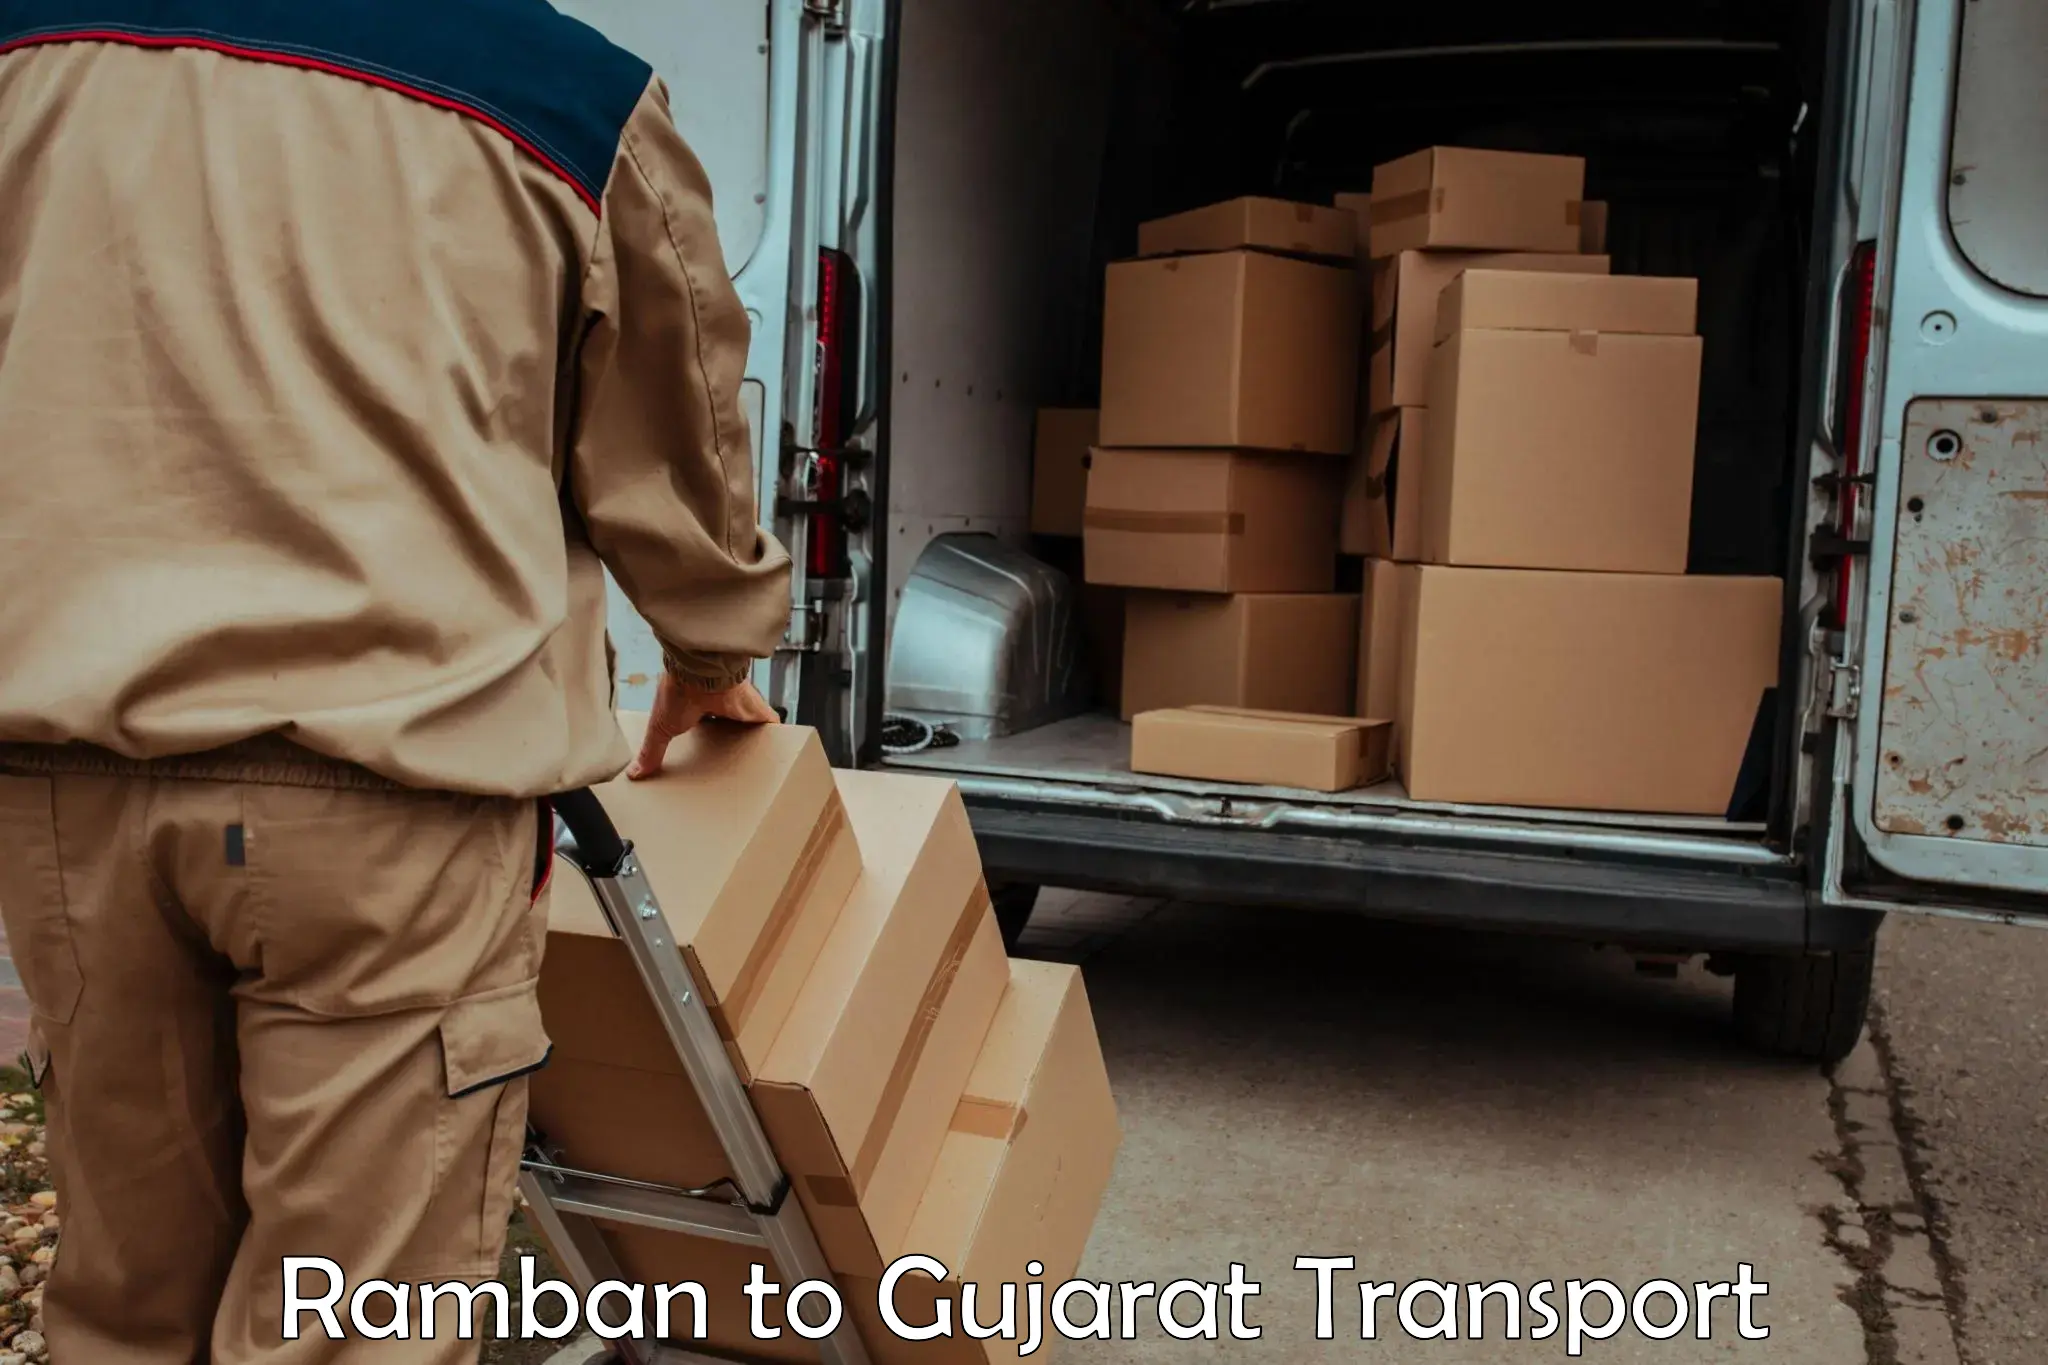 Online transport service Ramban to IIT Gandhi Nagar